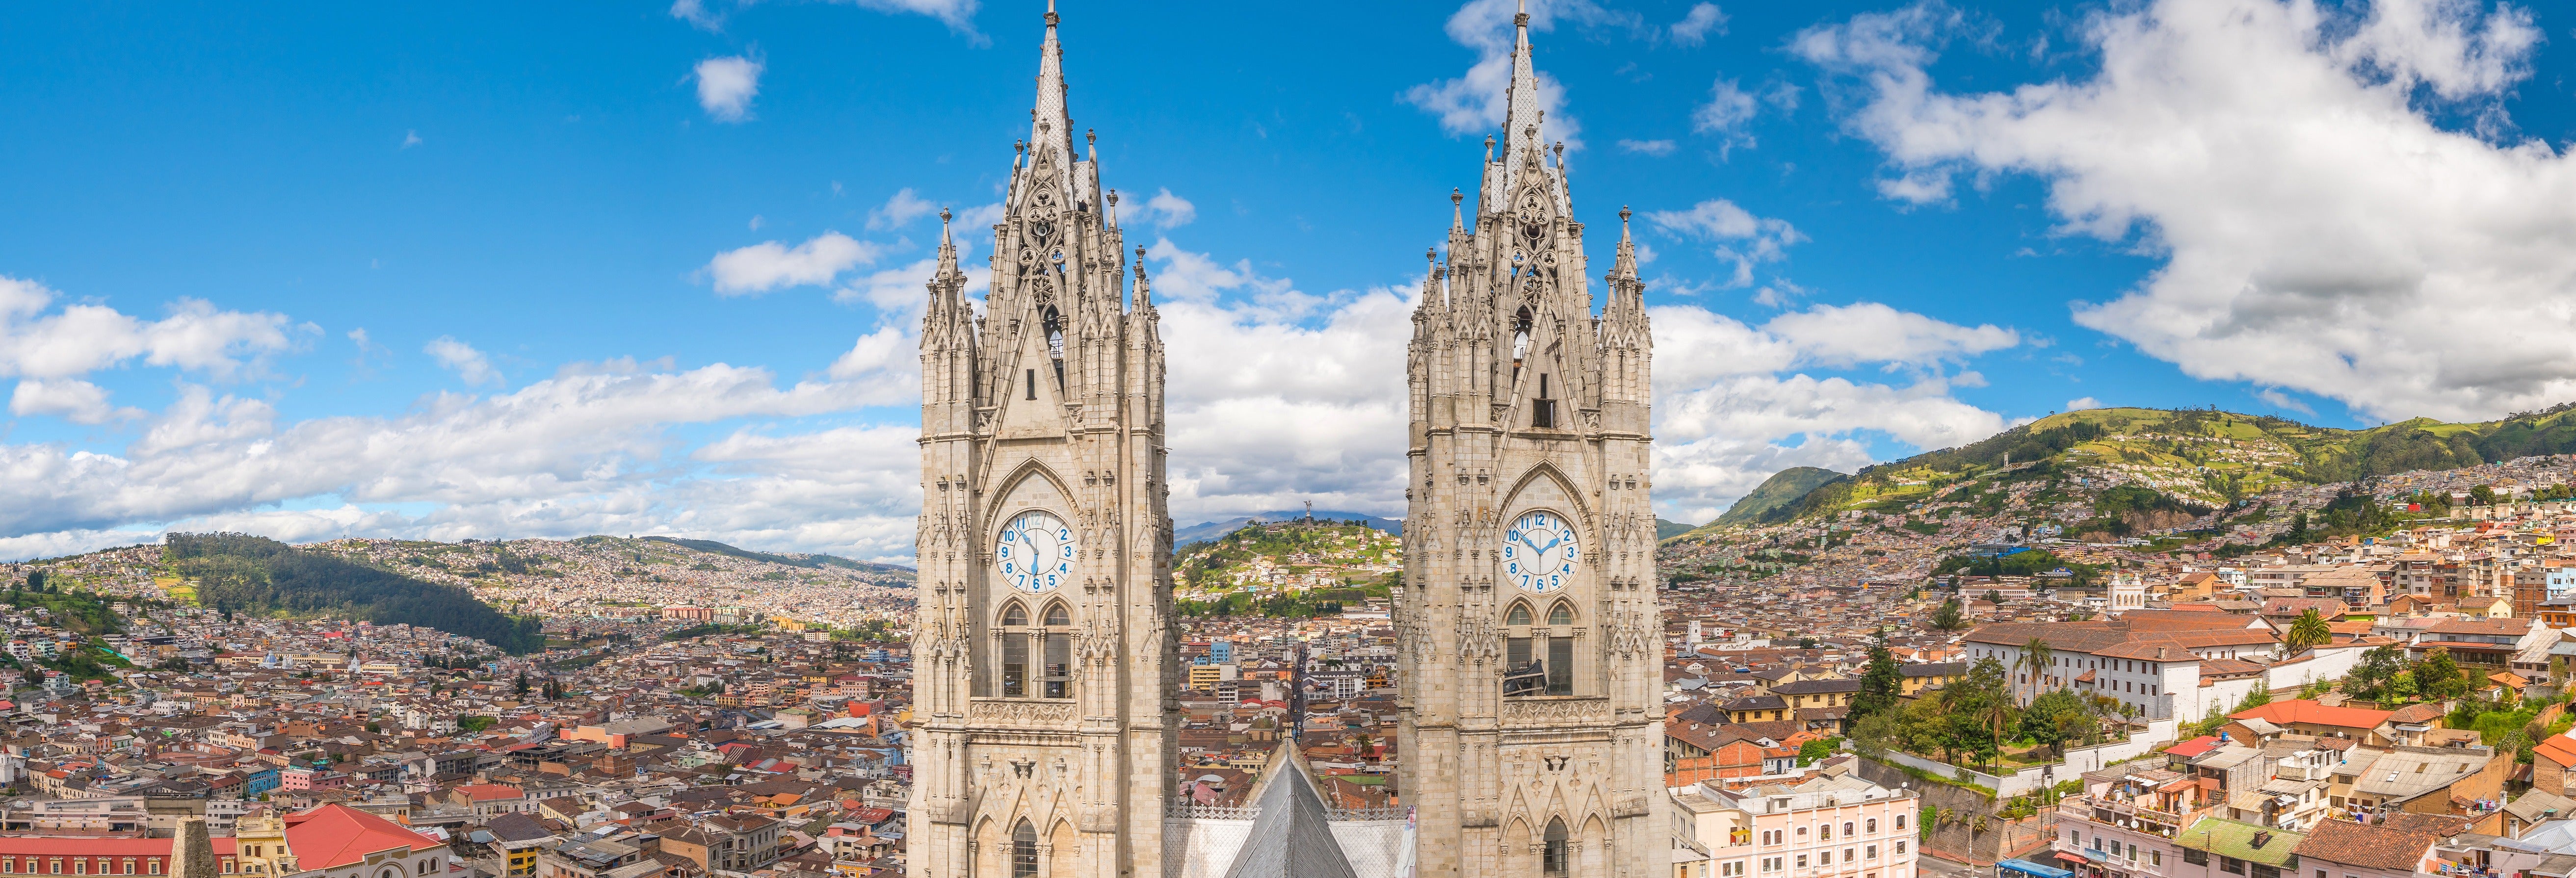 Tour por Quito e Mitad del Mundo